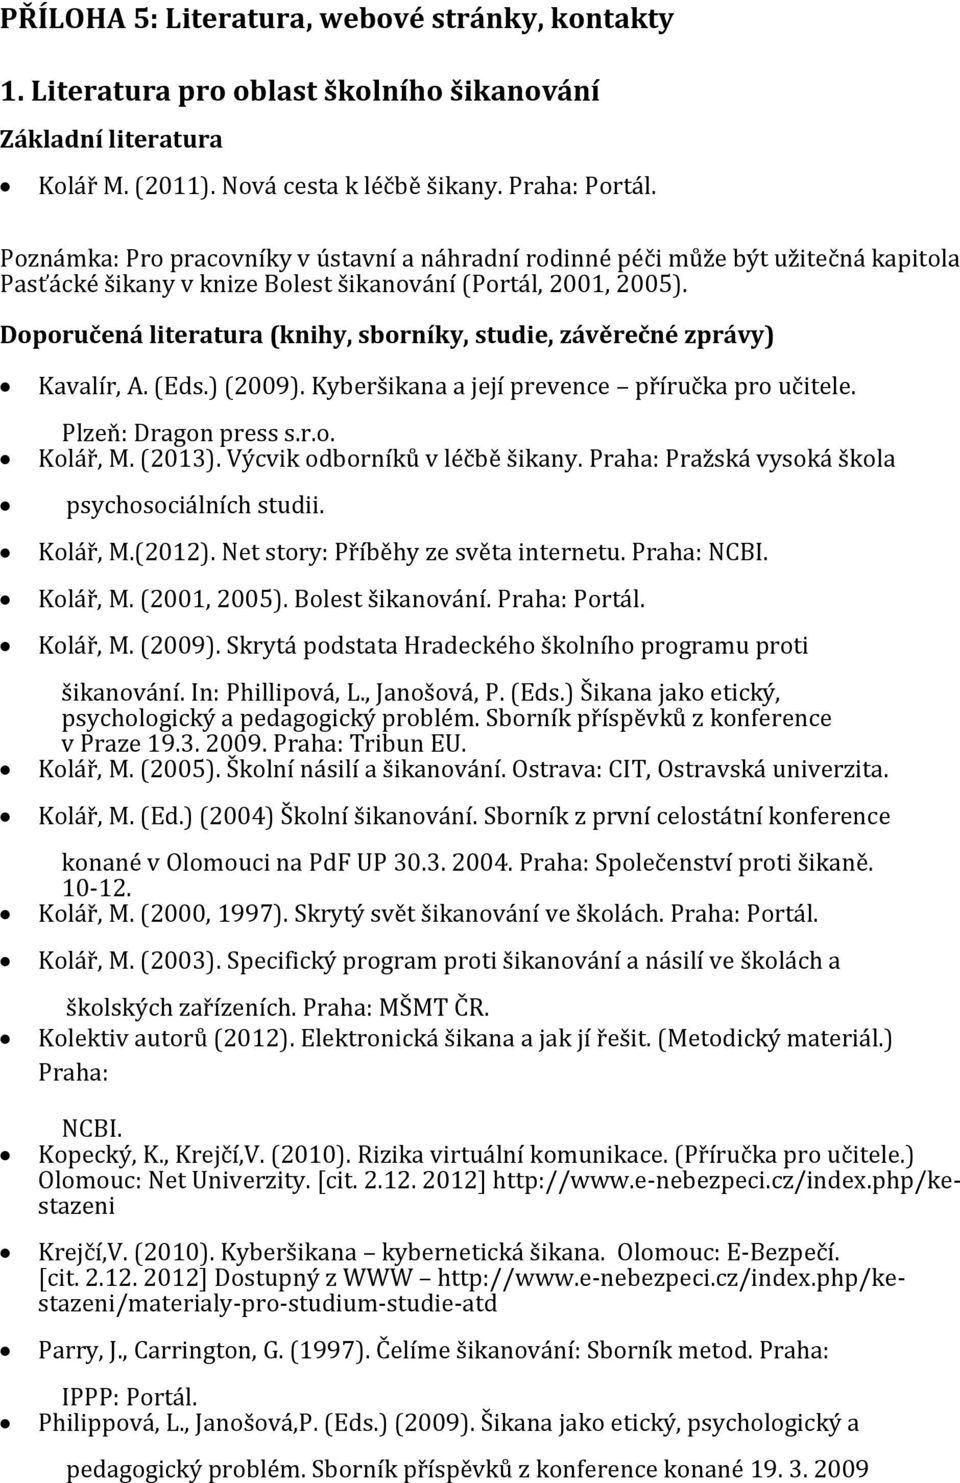 Doporučená literatura (knihy, sborníky, studie, závěrečné zprávy) Kavalír, A. (Eds.) (2009). Kyberšikana a její prevence příručka pro učitele. Plzeň: Dragon press s.r.o. Kolář, M. (2013).